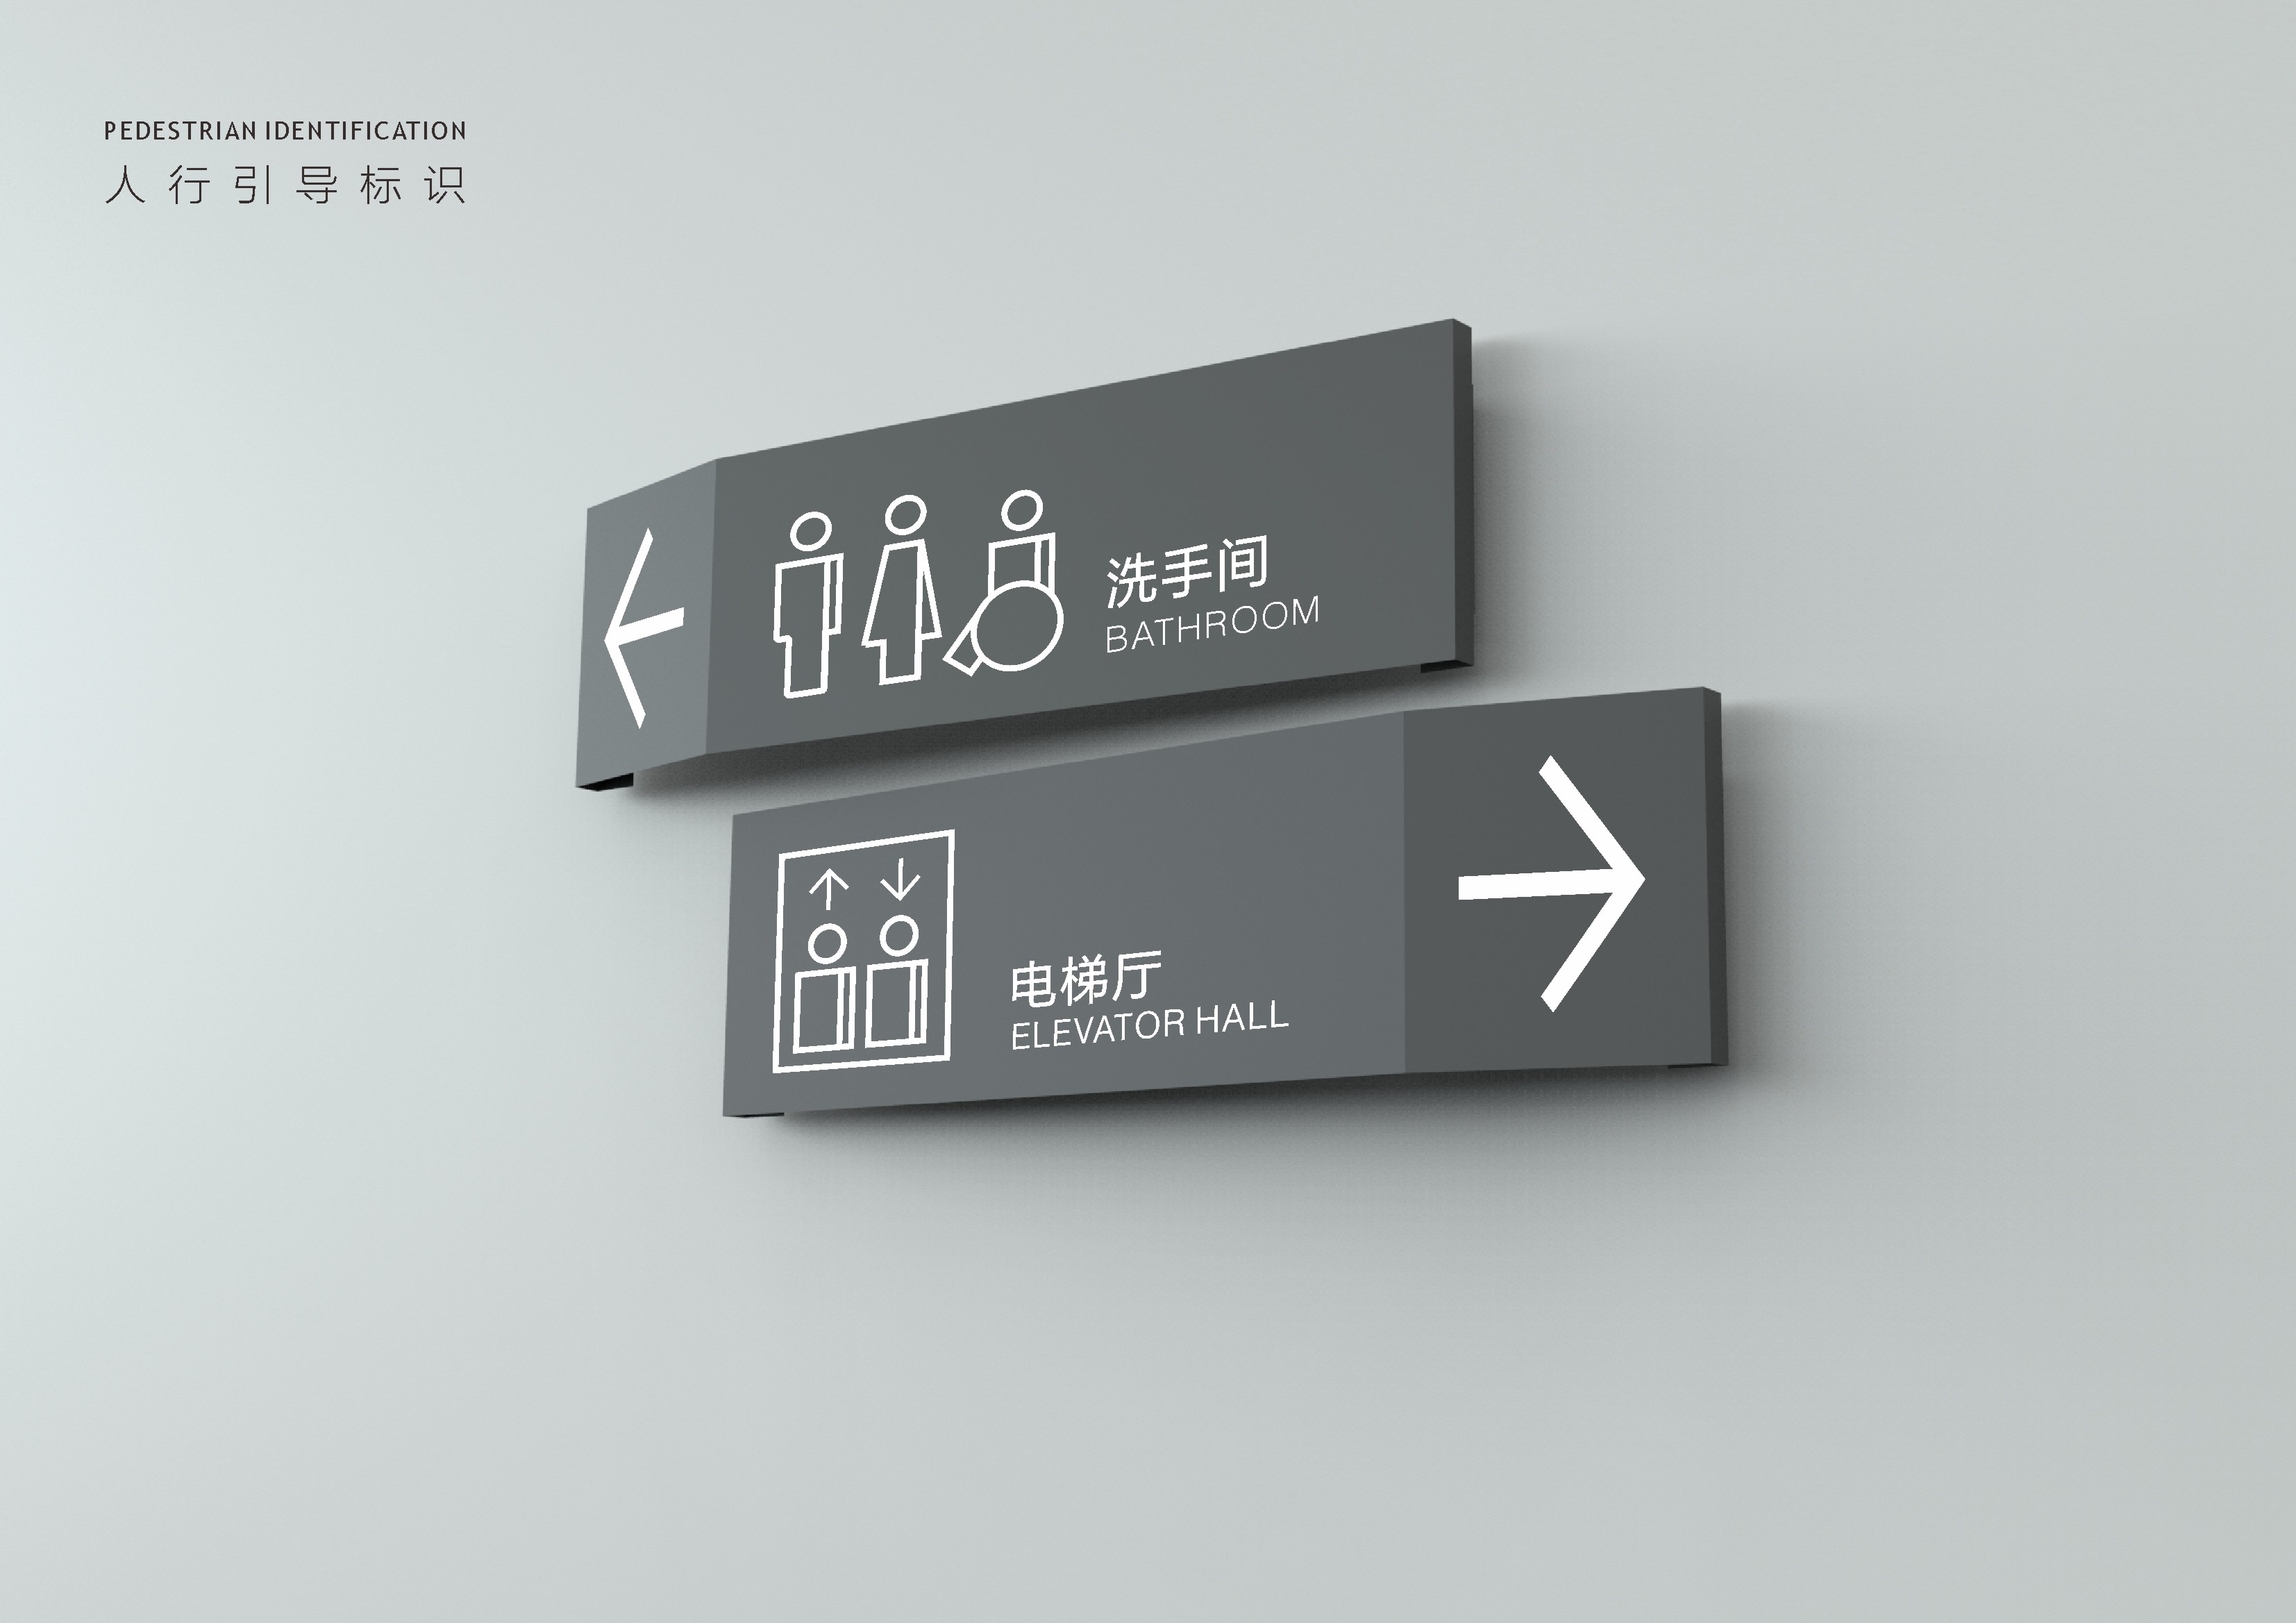 上海首建中心_标识导视系统概念设计方案_180508.cdr_0073.JPG